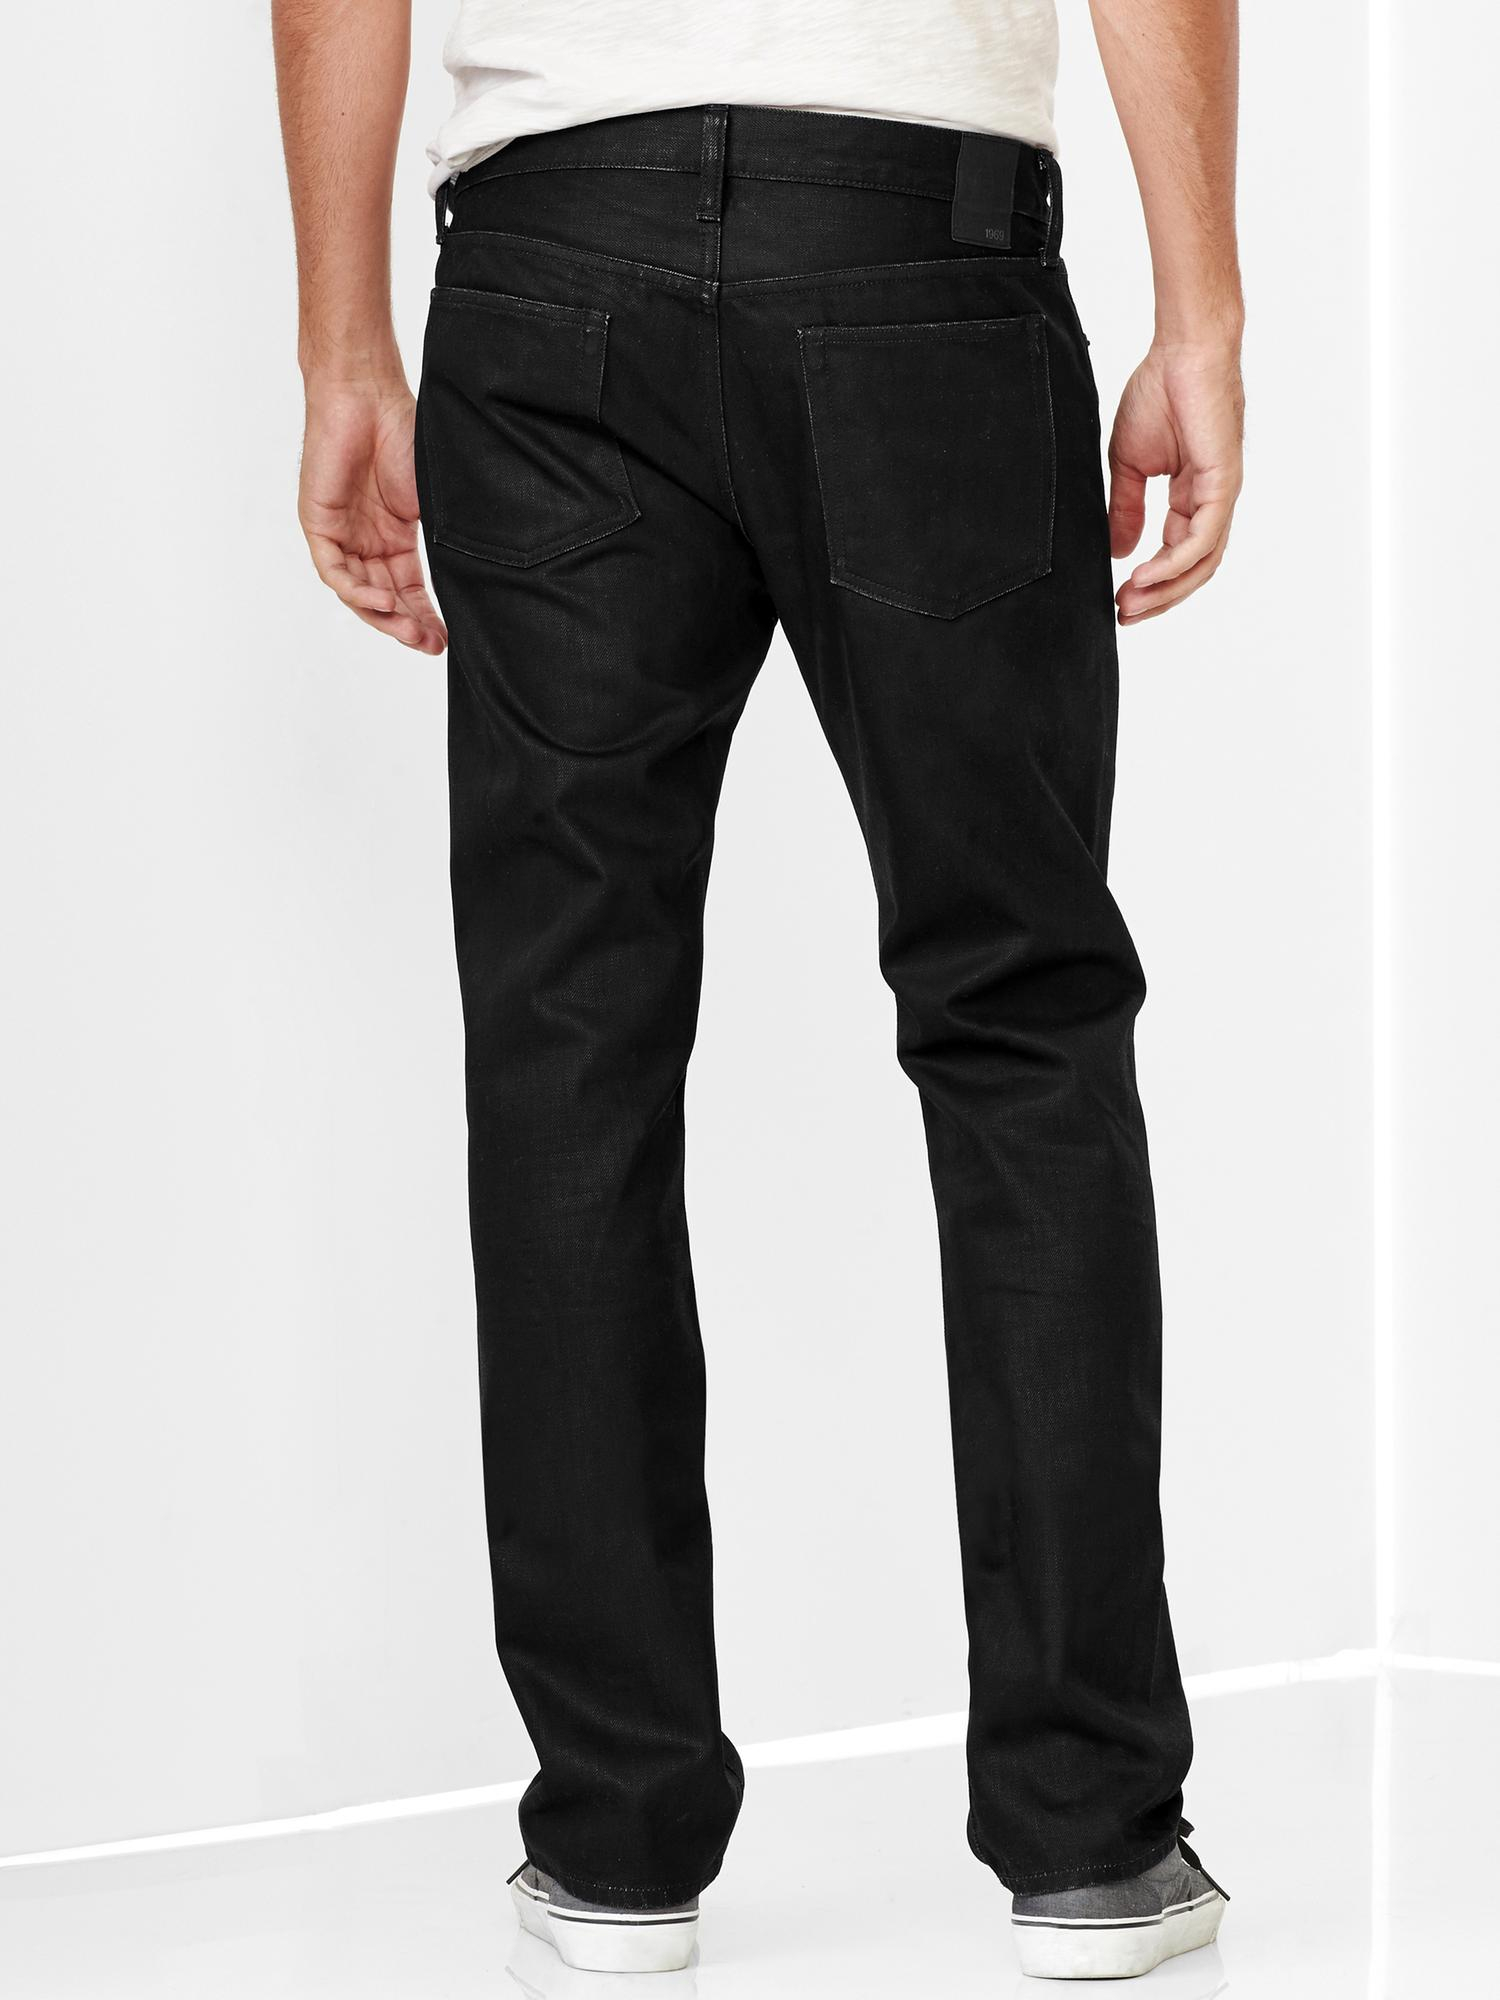 Gap 1969 Slim Fit Jeans (Coated Black Pigment Wash) in Black for Men